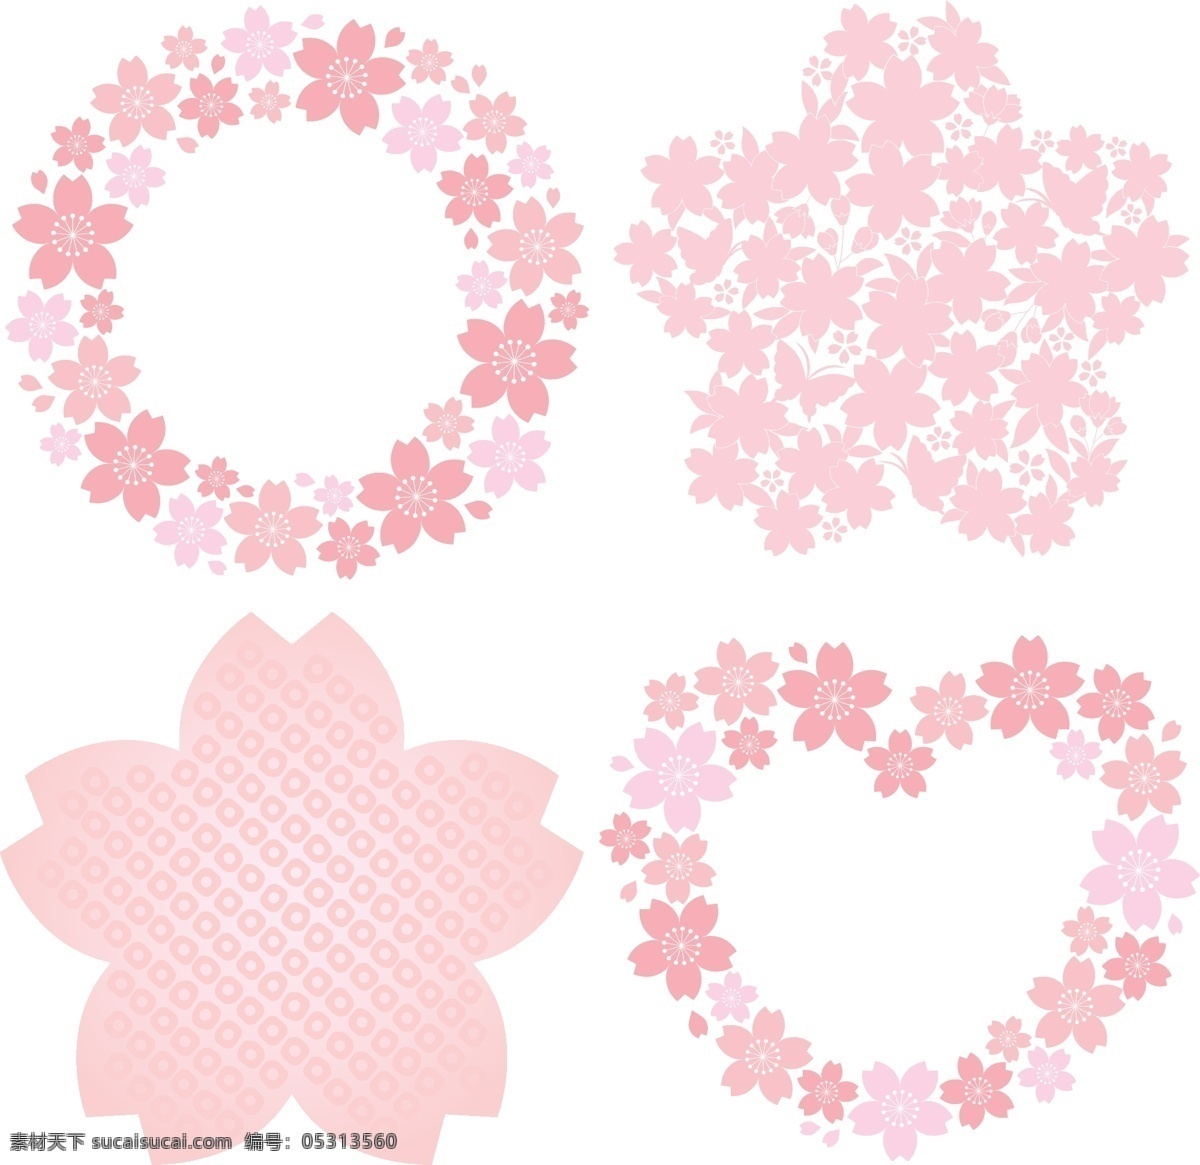 粉红 花朵 边框 矢量图 矢量 边框设计 粉红花朵 花环 模板 设计稿 素材元素 心形 珍珠项链 鲜花 源文件